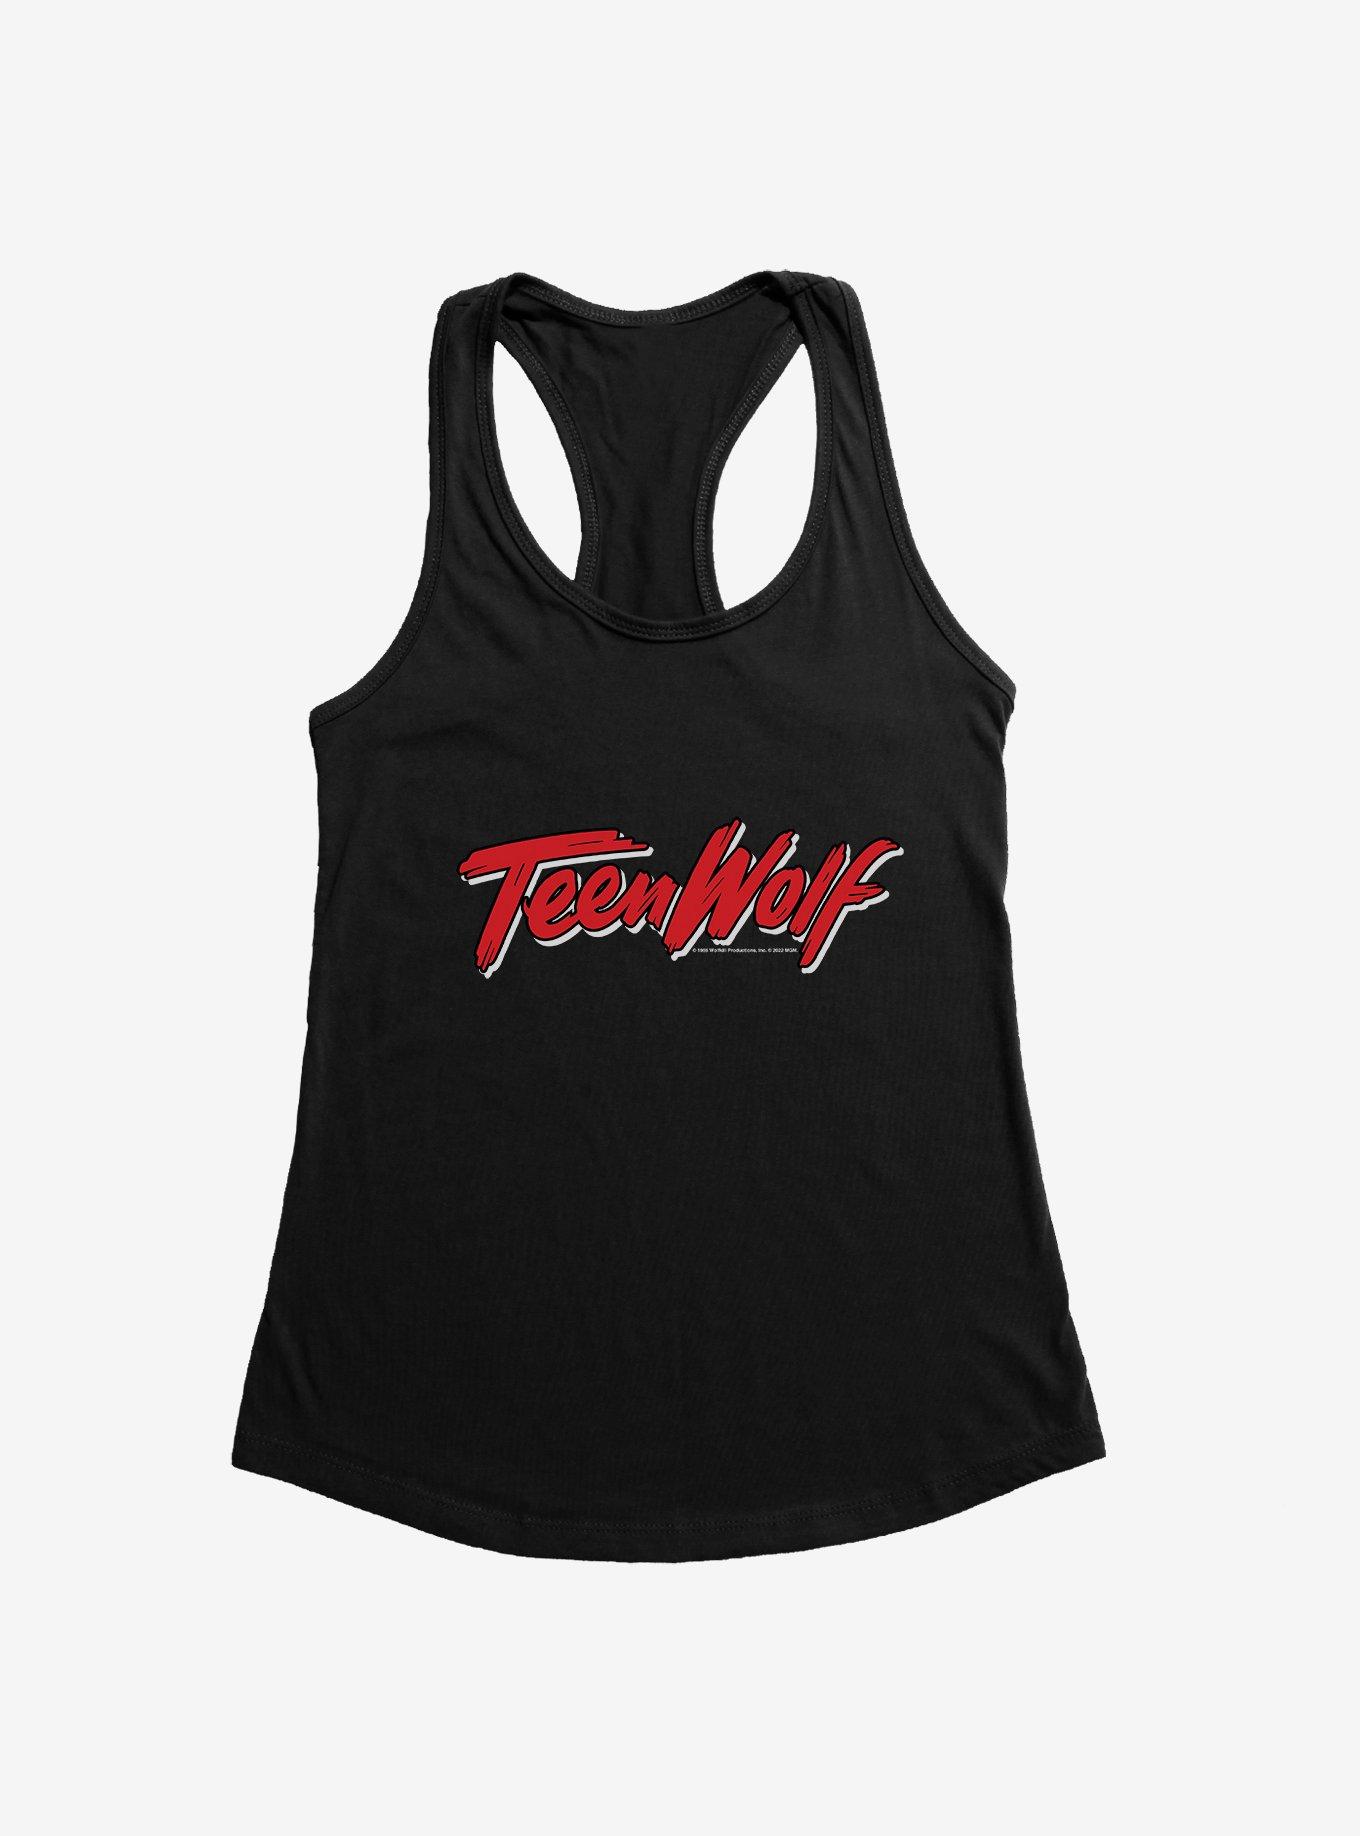 Teen Wolf Title Logo Girls Tank